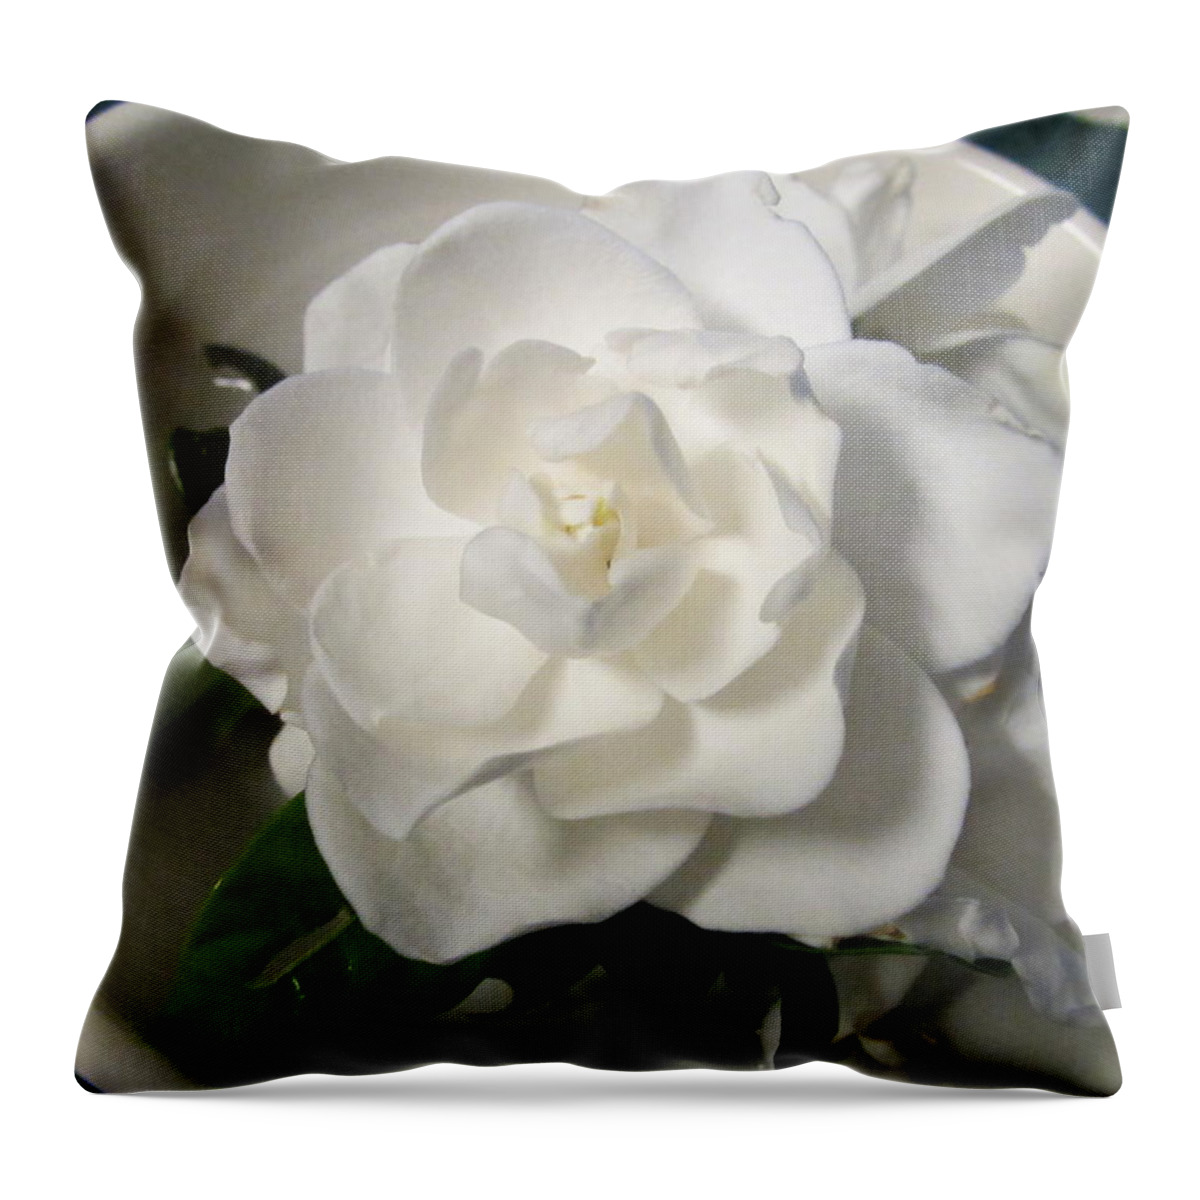 Gardenia Throw Pillow featuring the photograph Gardenia Bowl by Deborah Lacoste